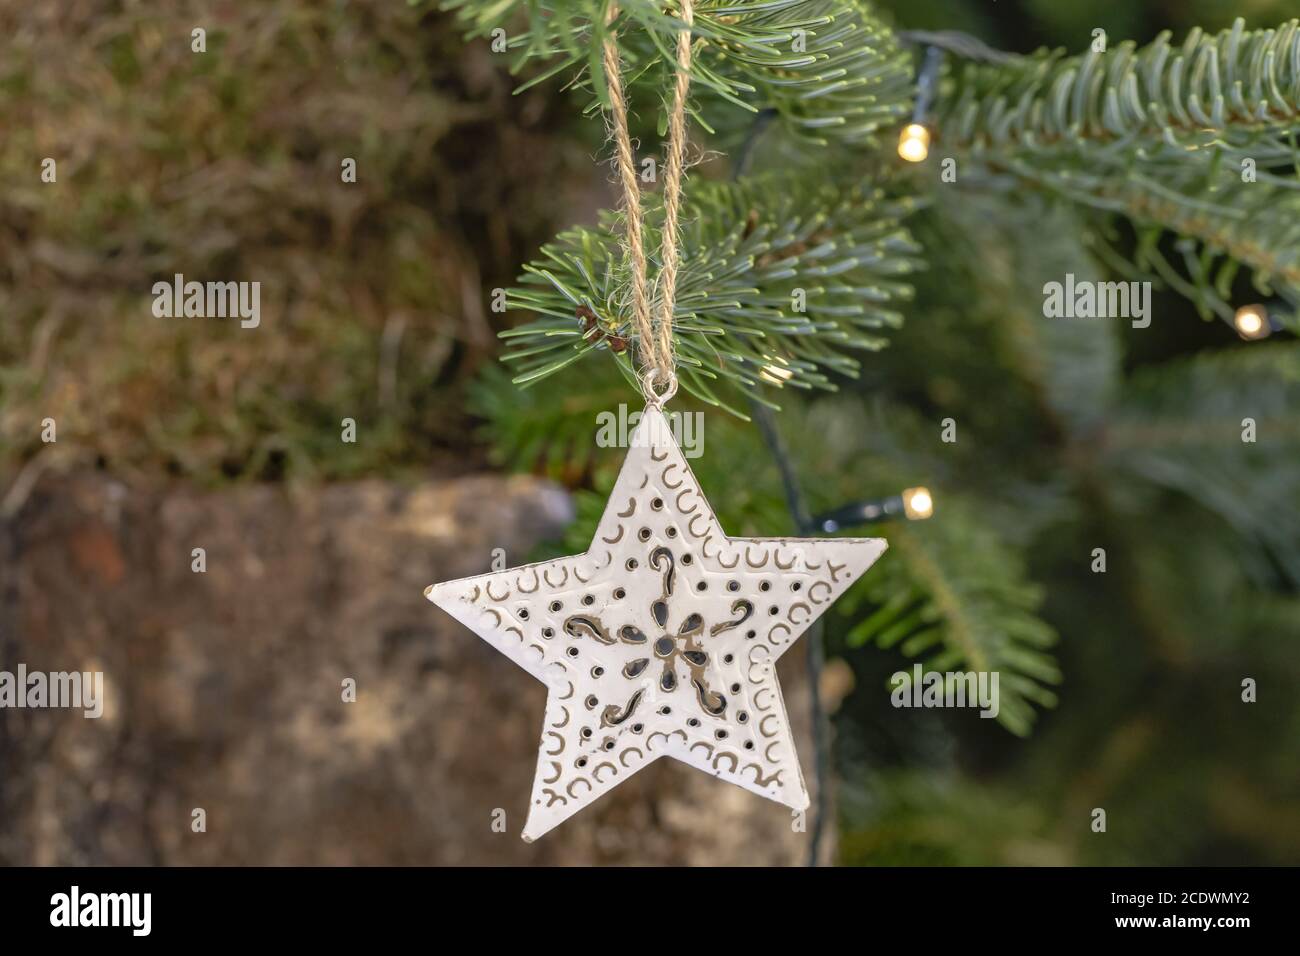 Nostalgic Christmas tree decorations Stock Photo